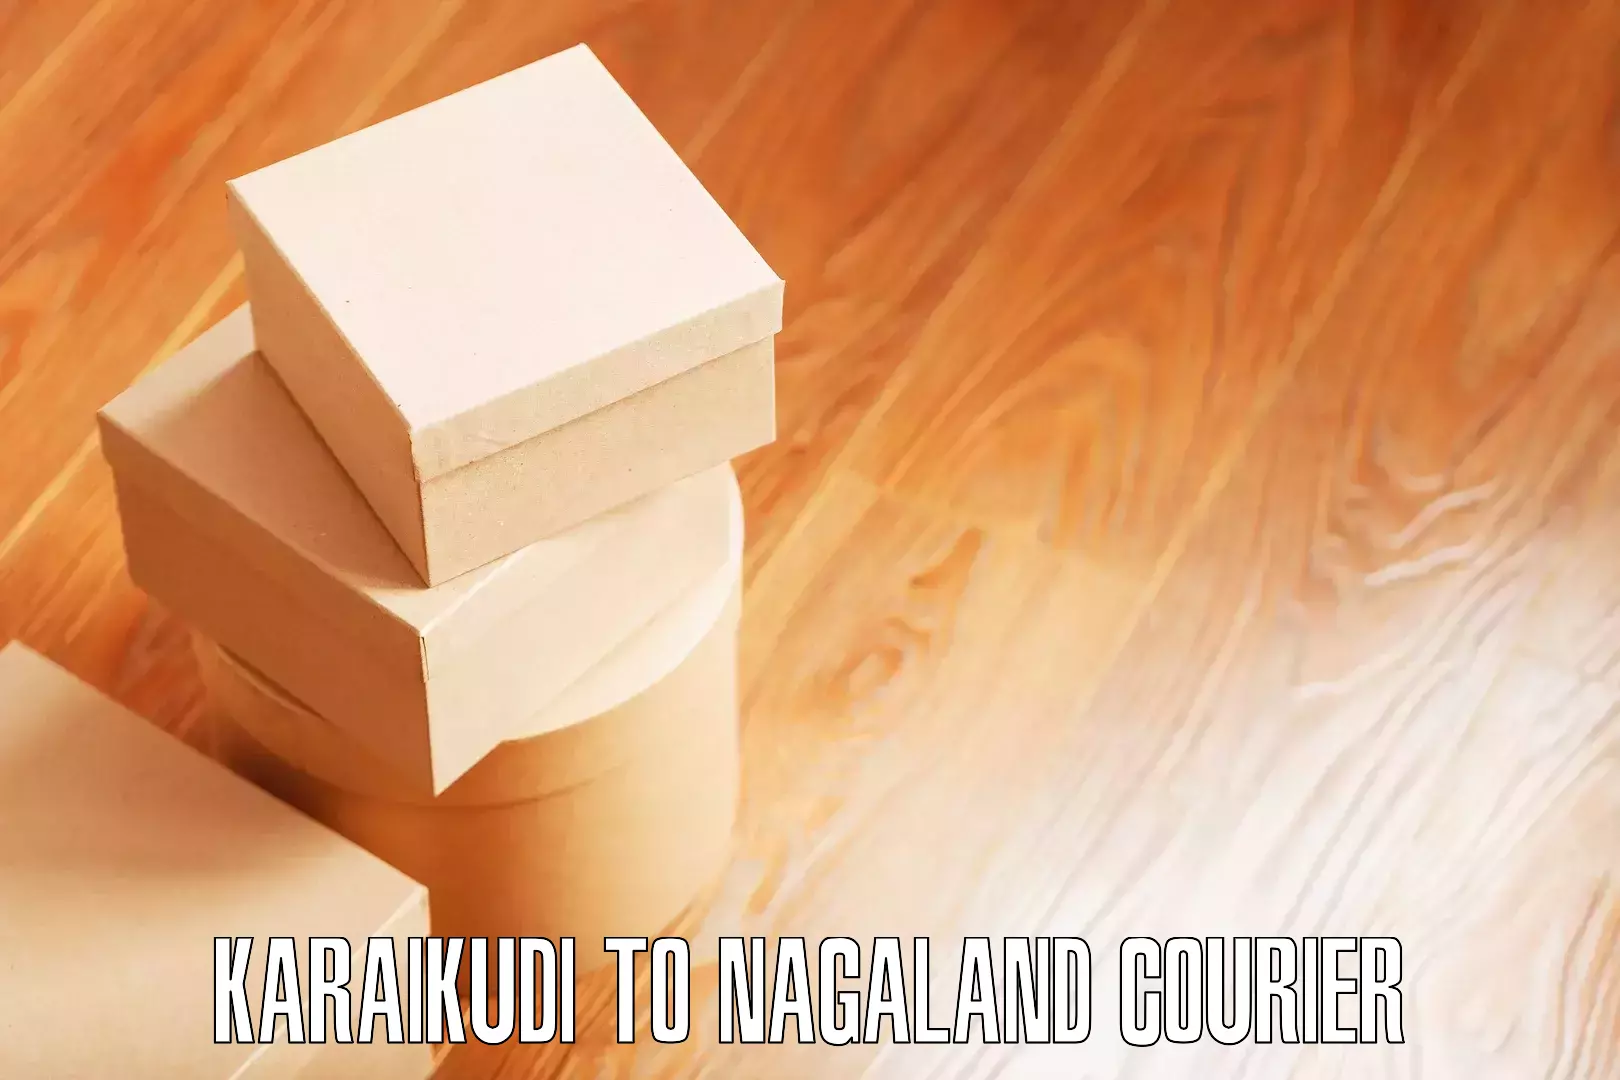 Efficient moving company Karaikudi to NIT Nagaland